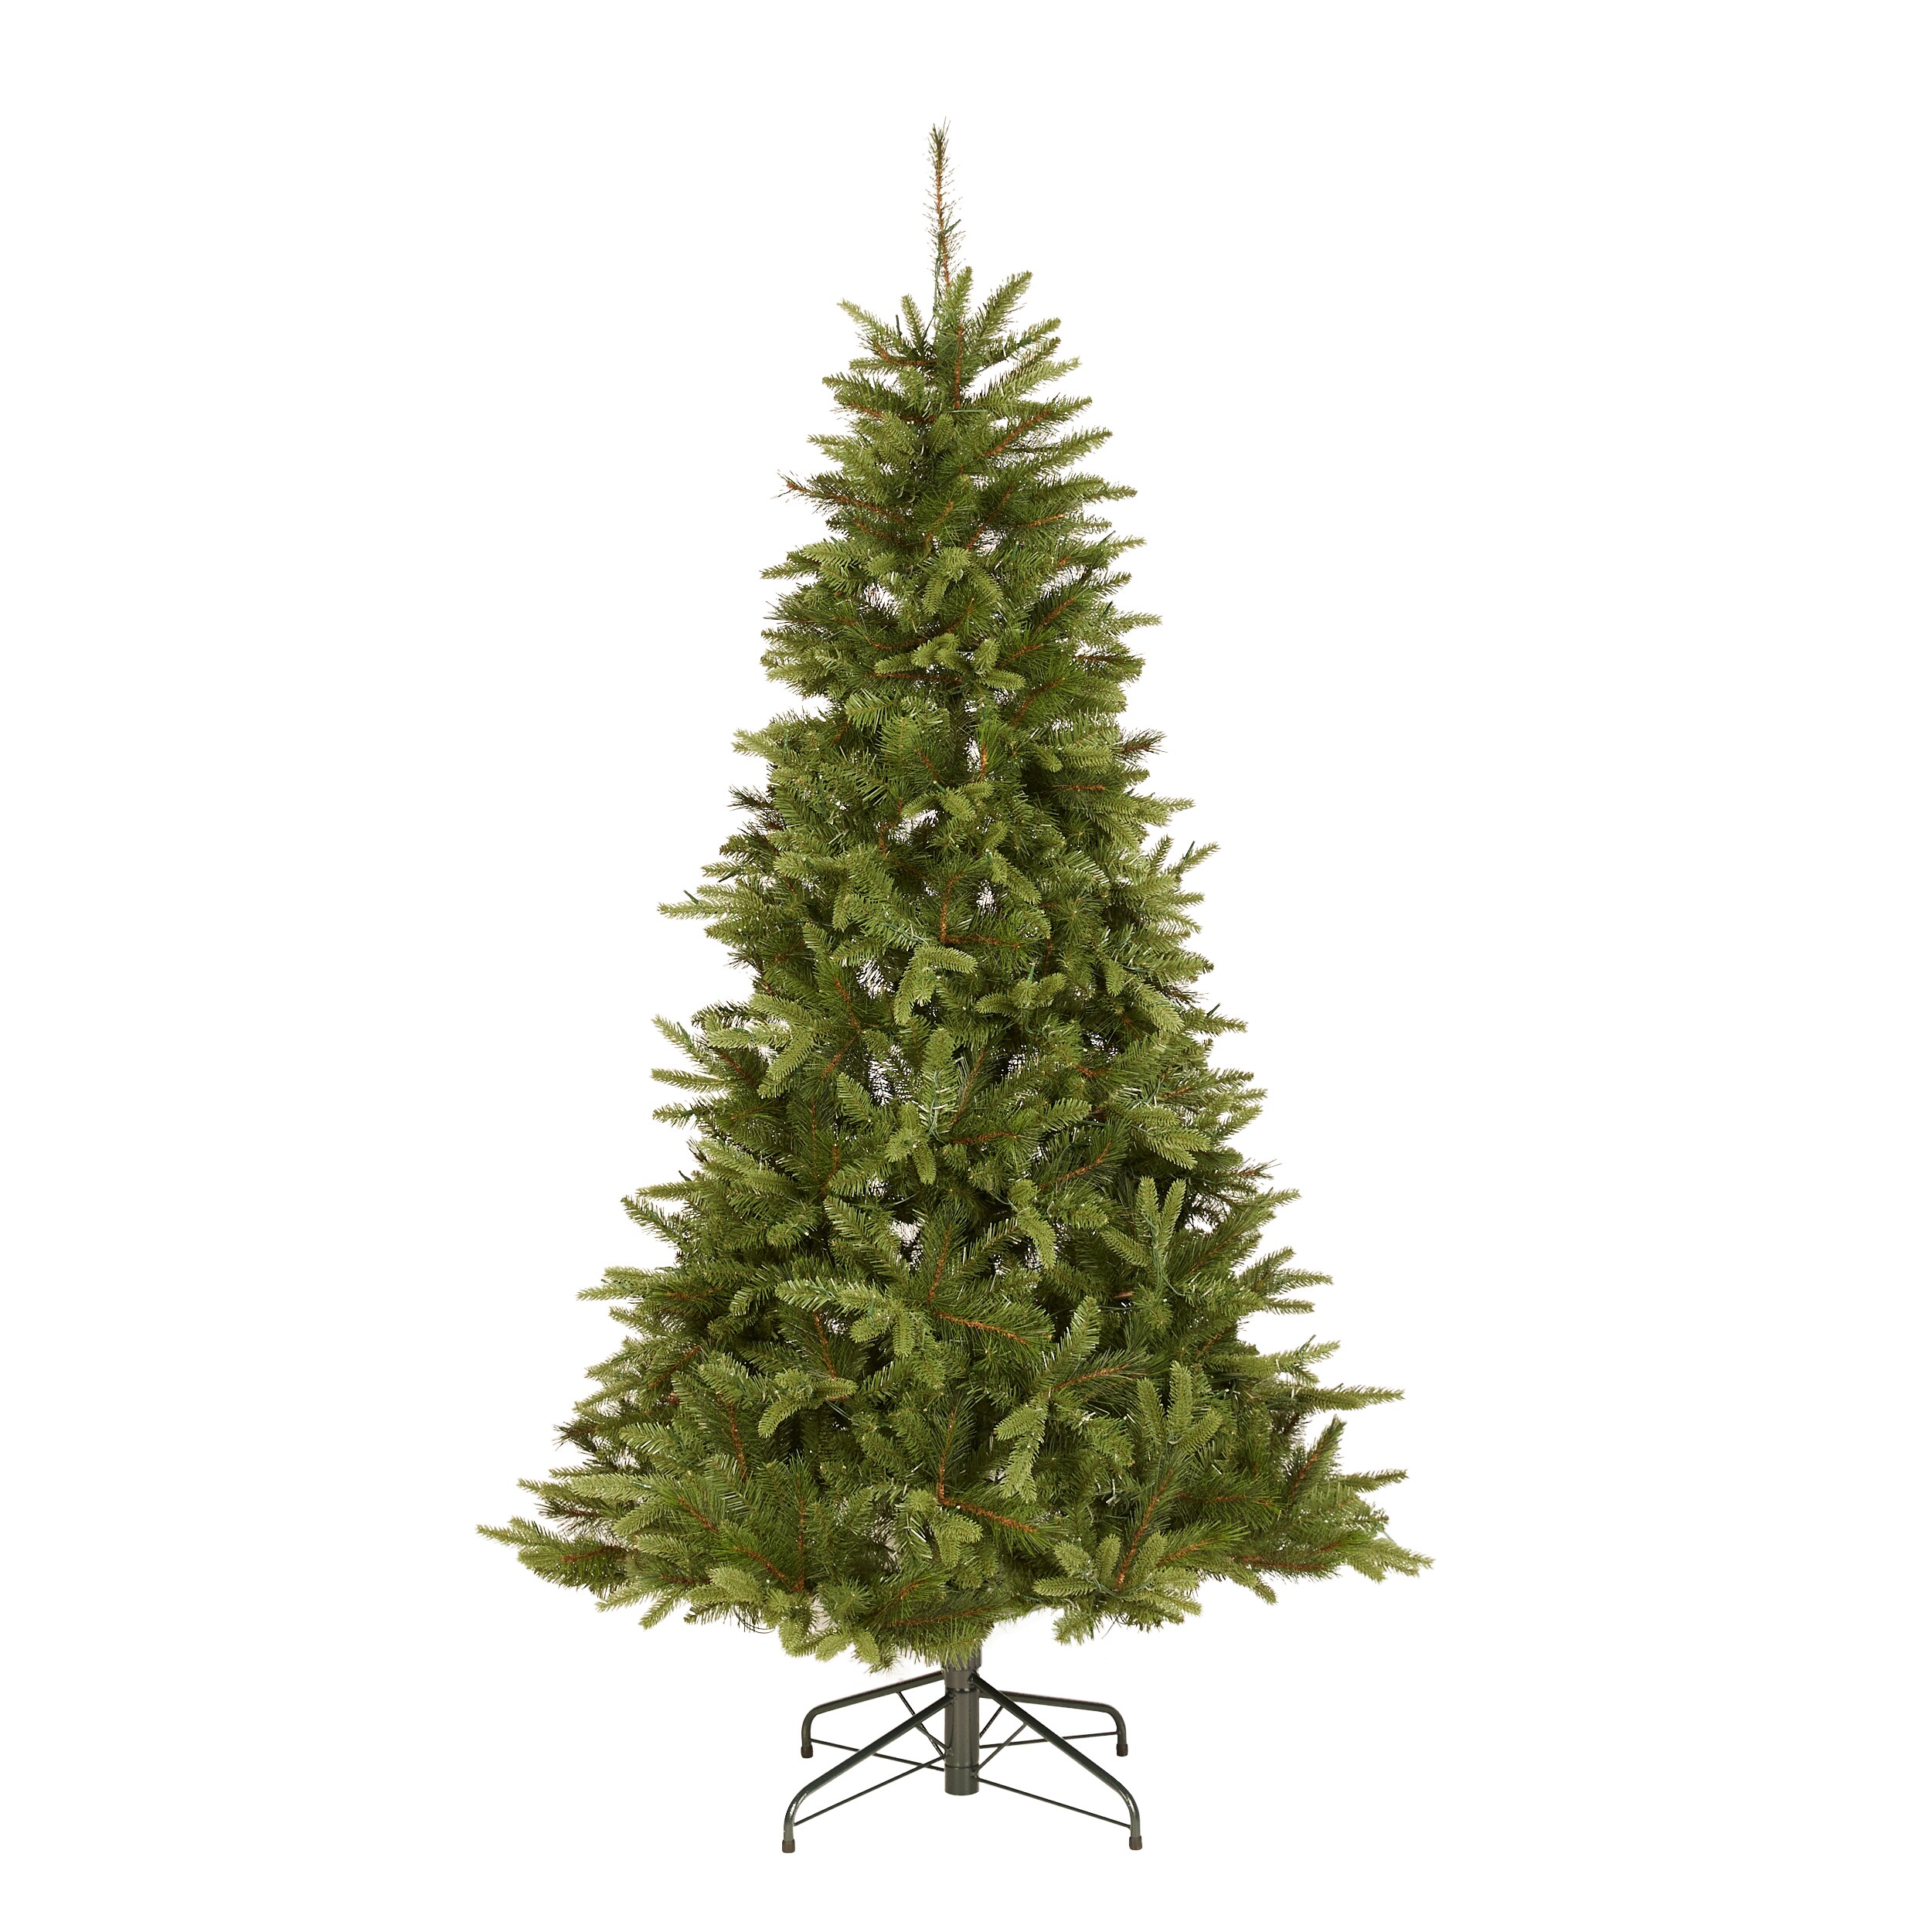 Christmas Tree-To-Be Spruce Grow Kit